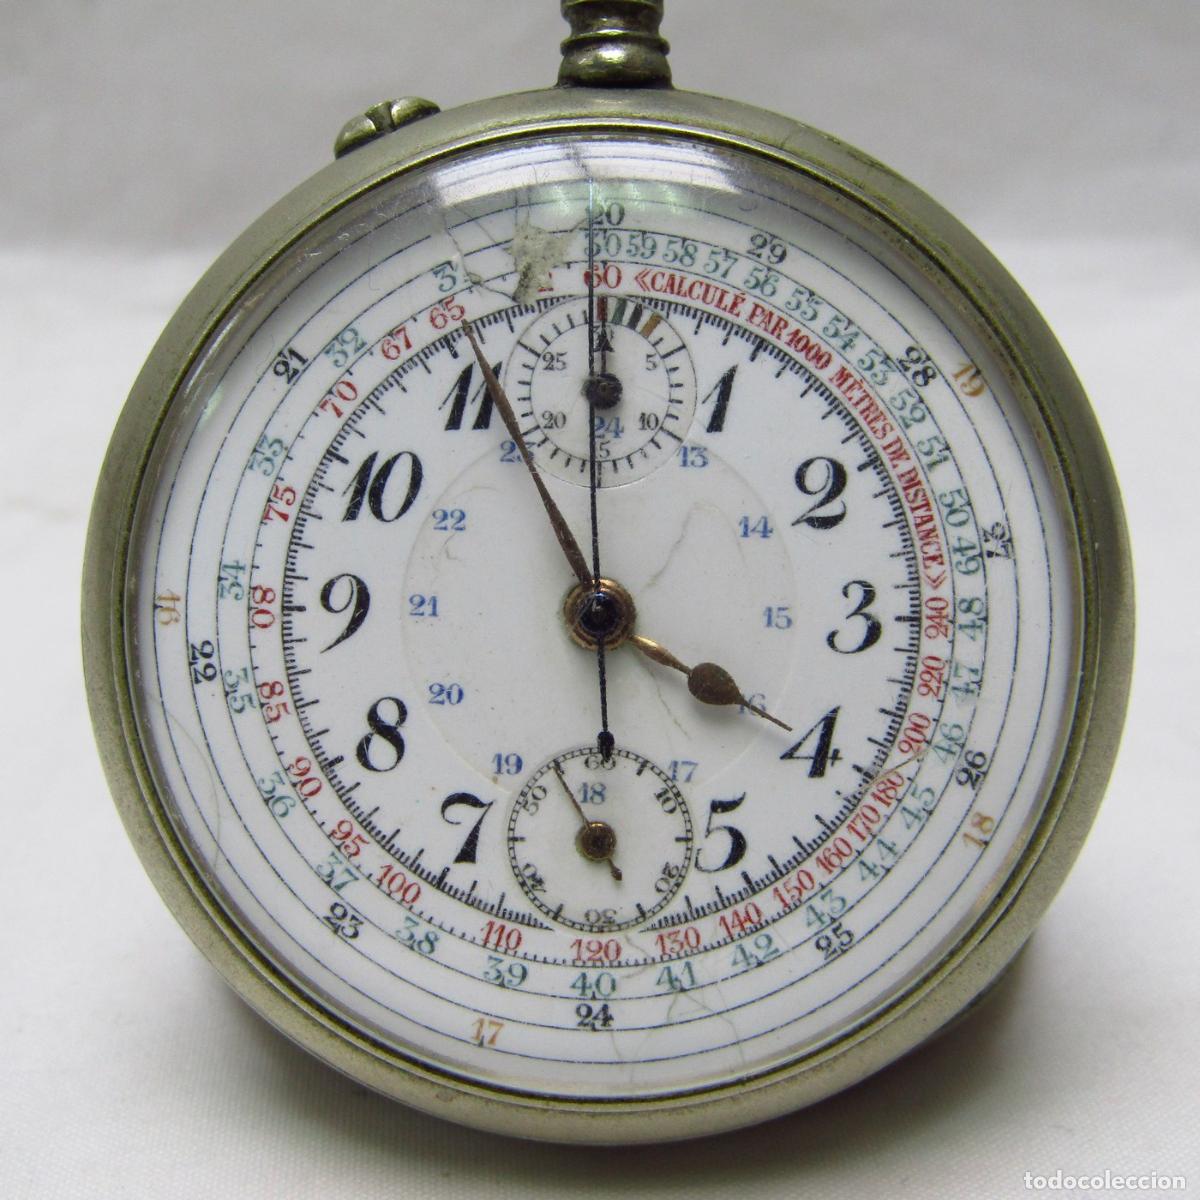 Reloj-Cronómetro Suizo, Lepine y remontoir. Suiza, ca. 1900